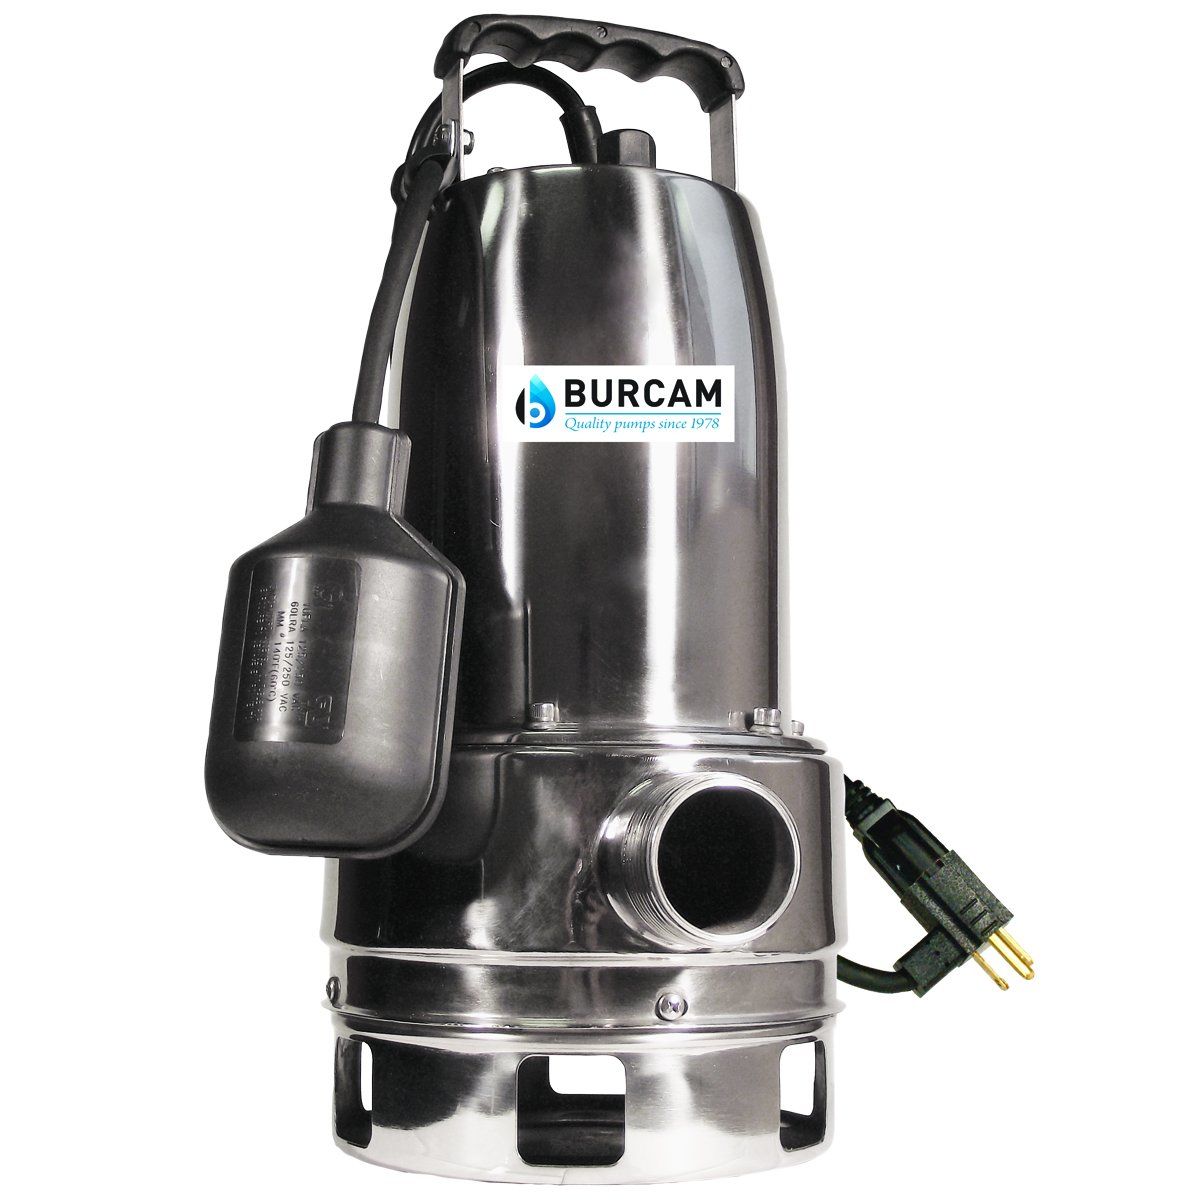 Burcam 300527 - Pompe de puisard submersible en acier inoxydable de 3/4 chevaux avec interrupteur à flotteur mécanique